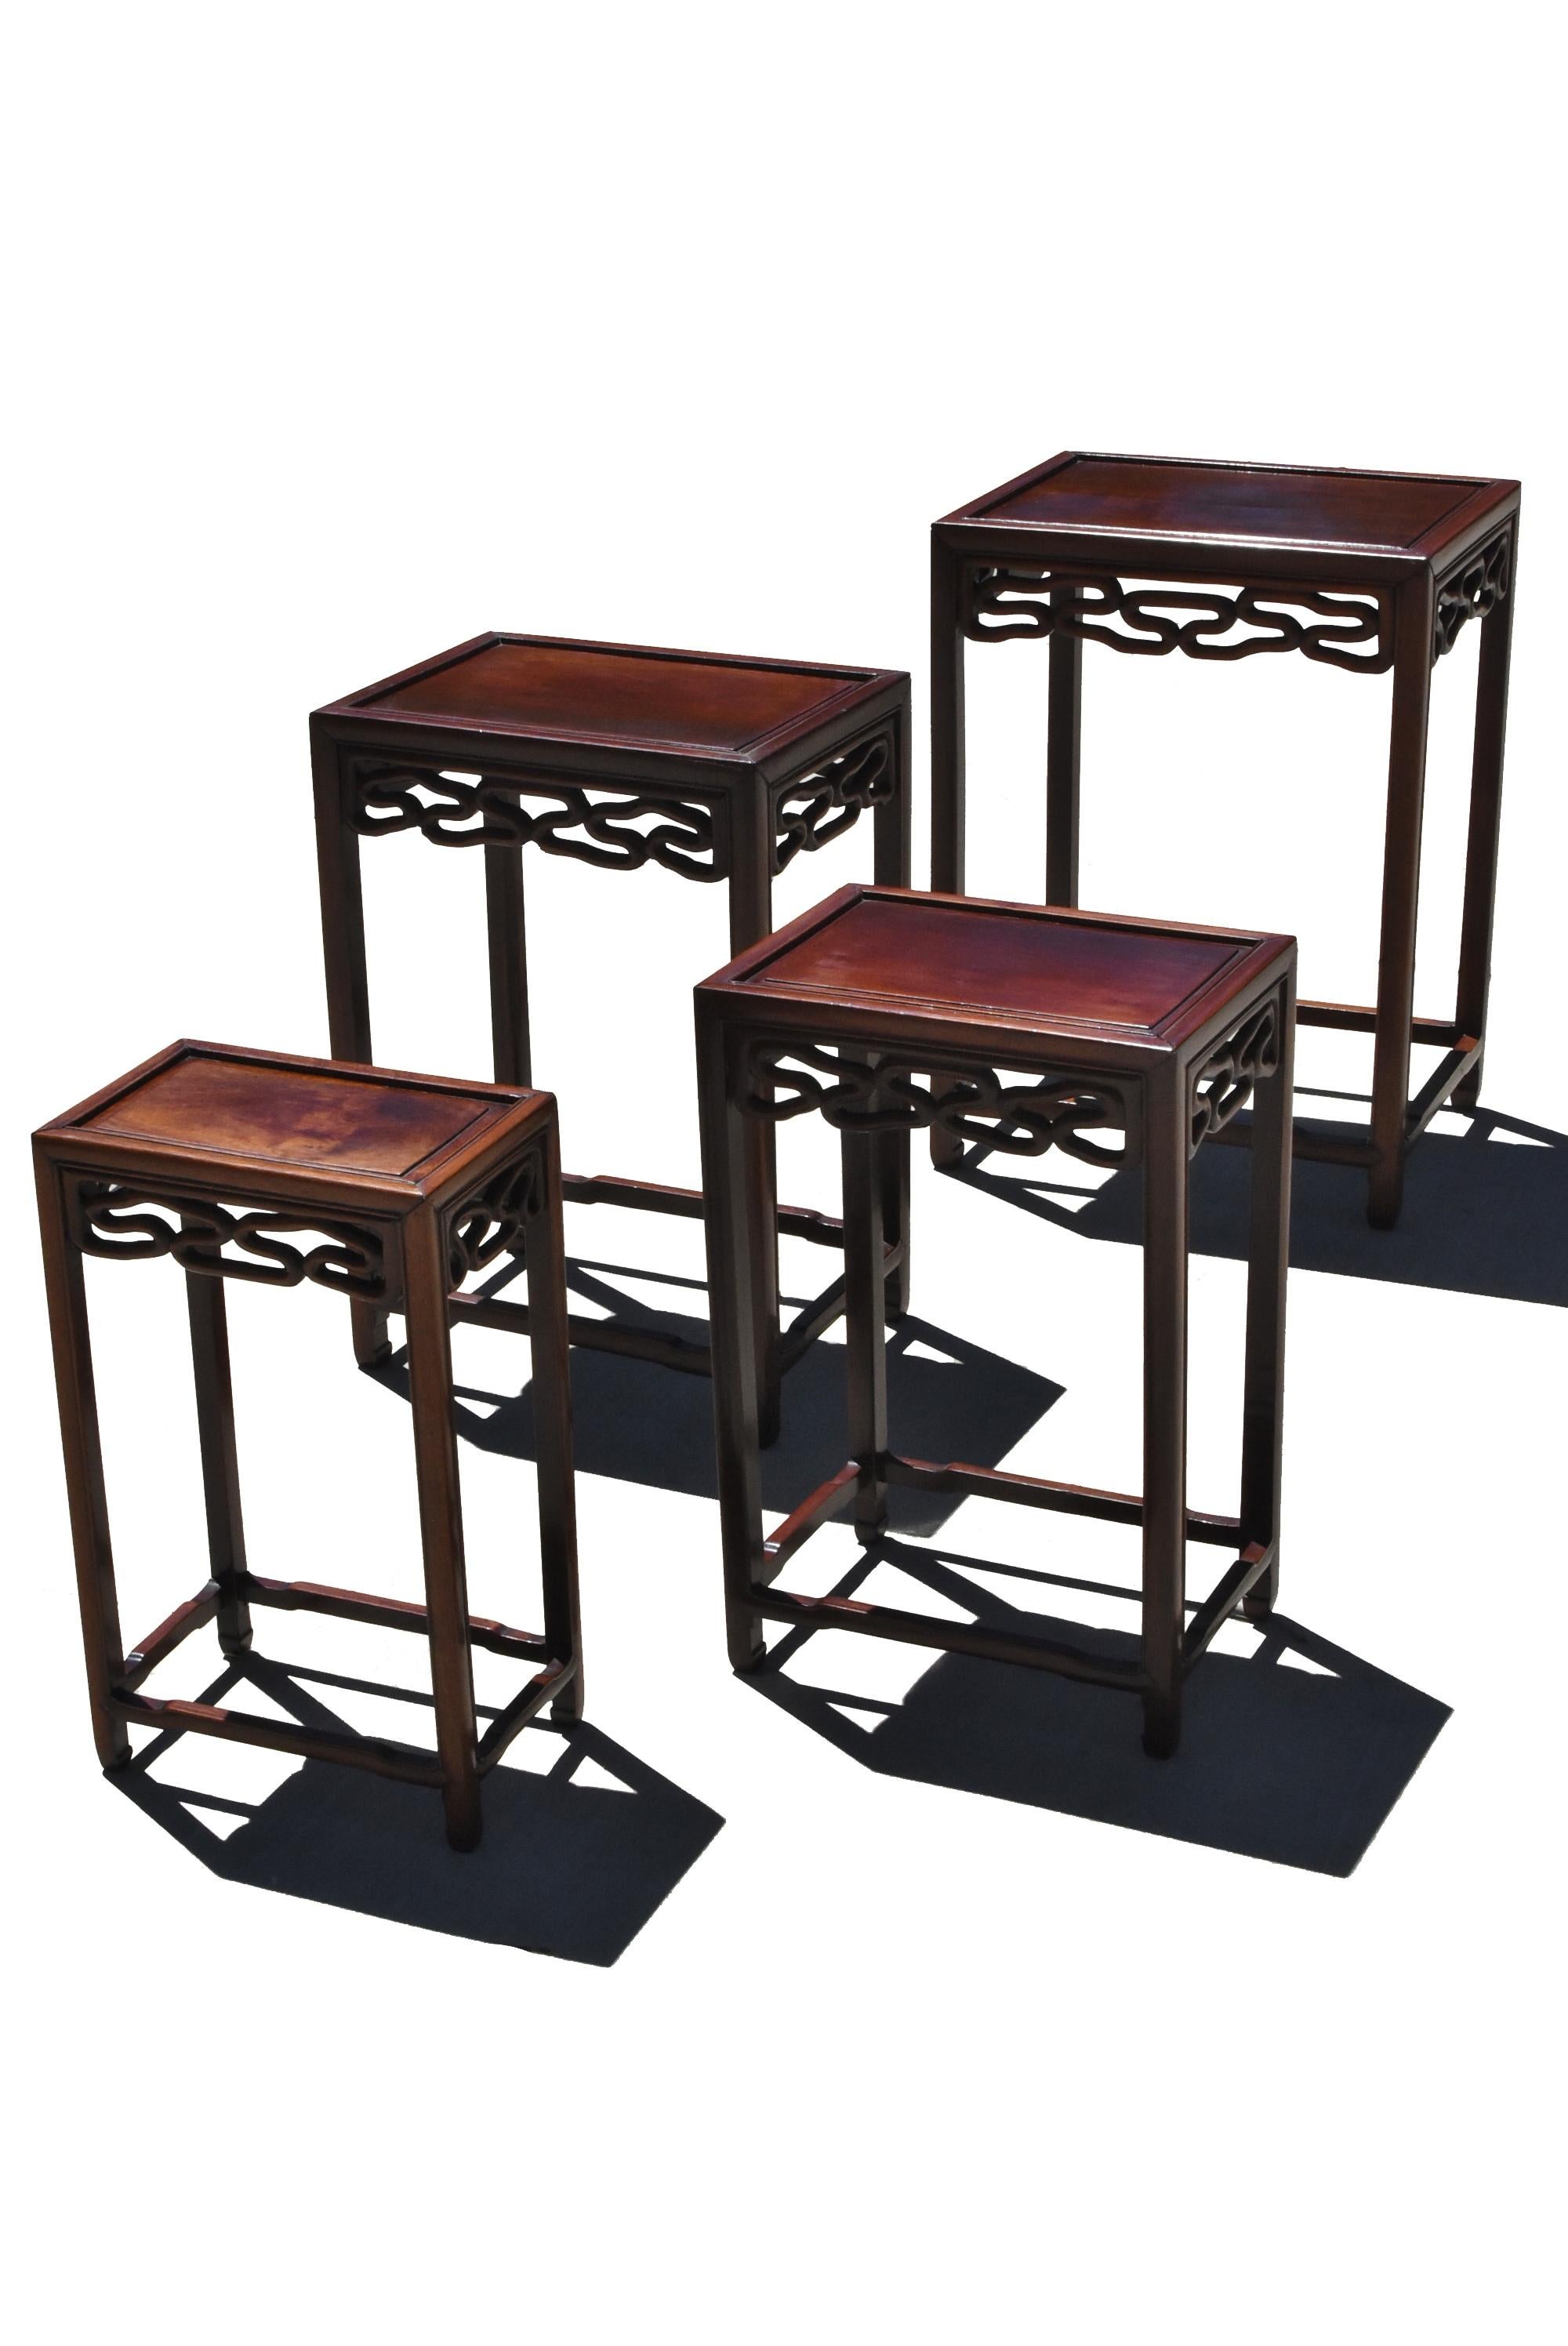 china wood table